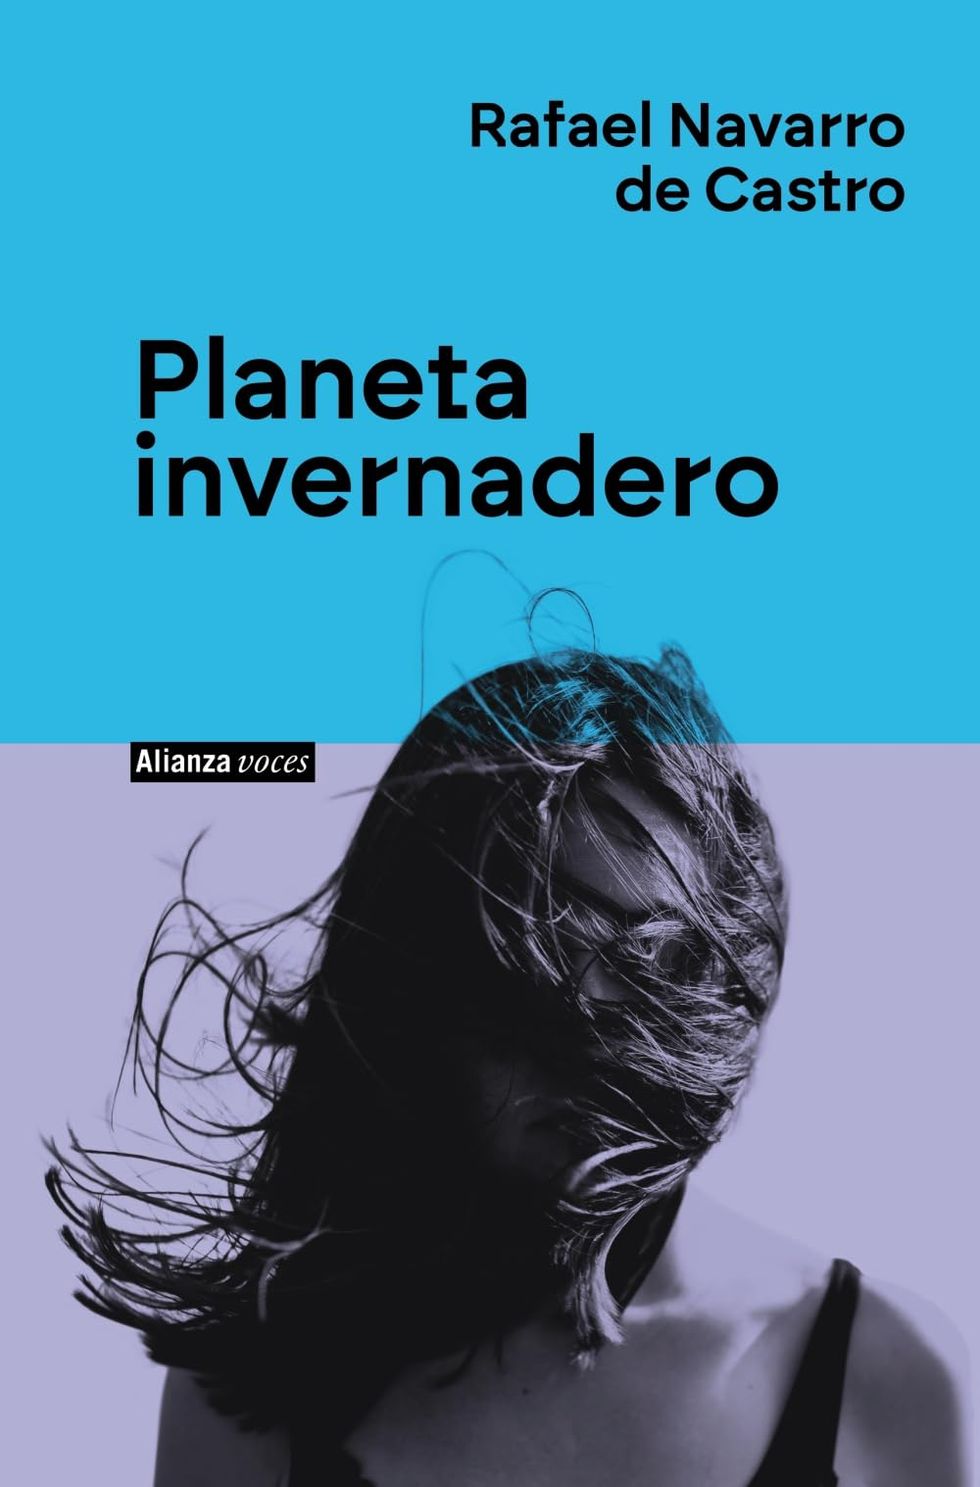 'Planeta invernadero' de Rafael Navarro de Castro